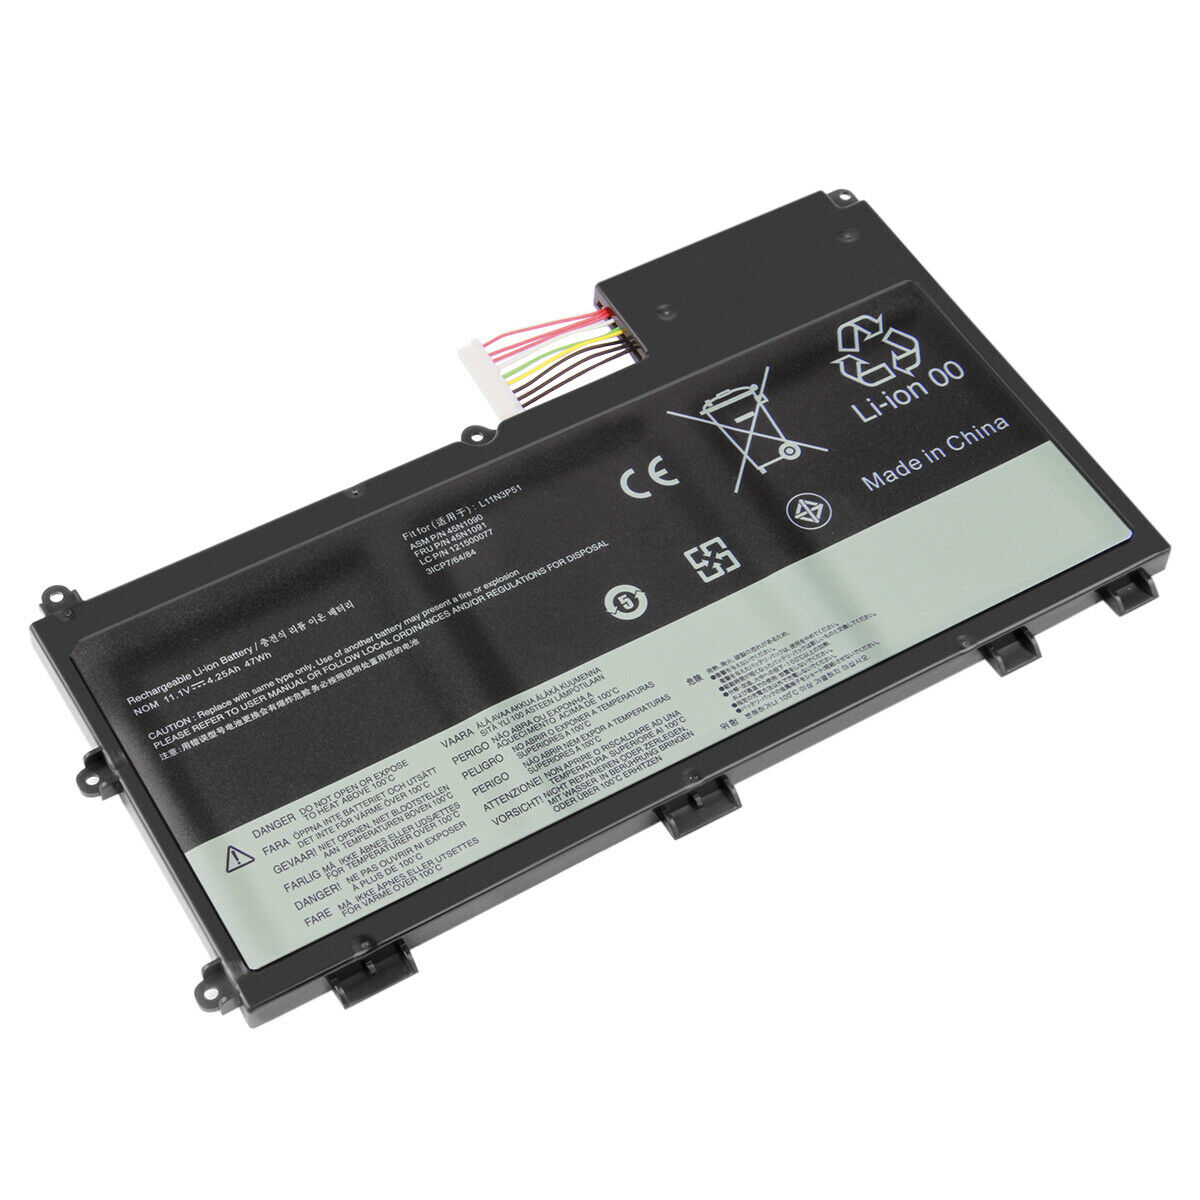 Batería para Lenovo L11n3p51, L11S3P51, L12l3p51(compatible)